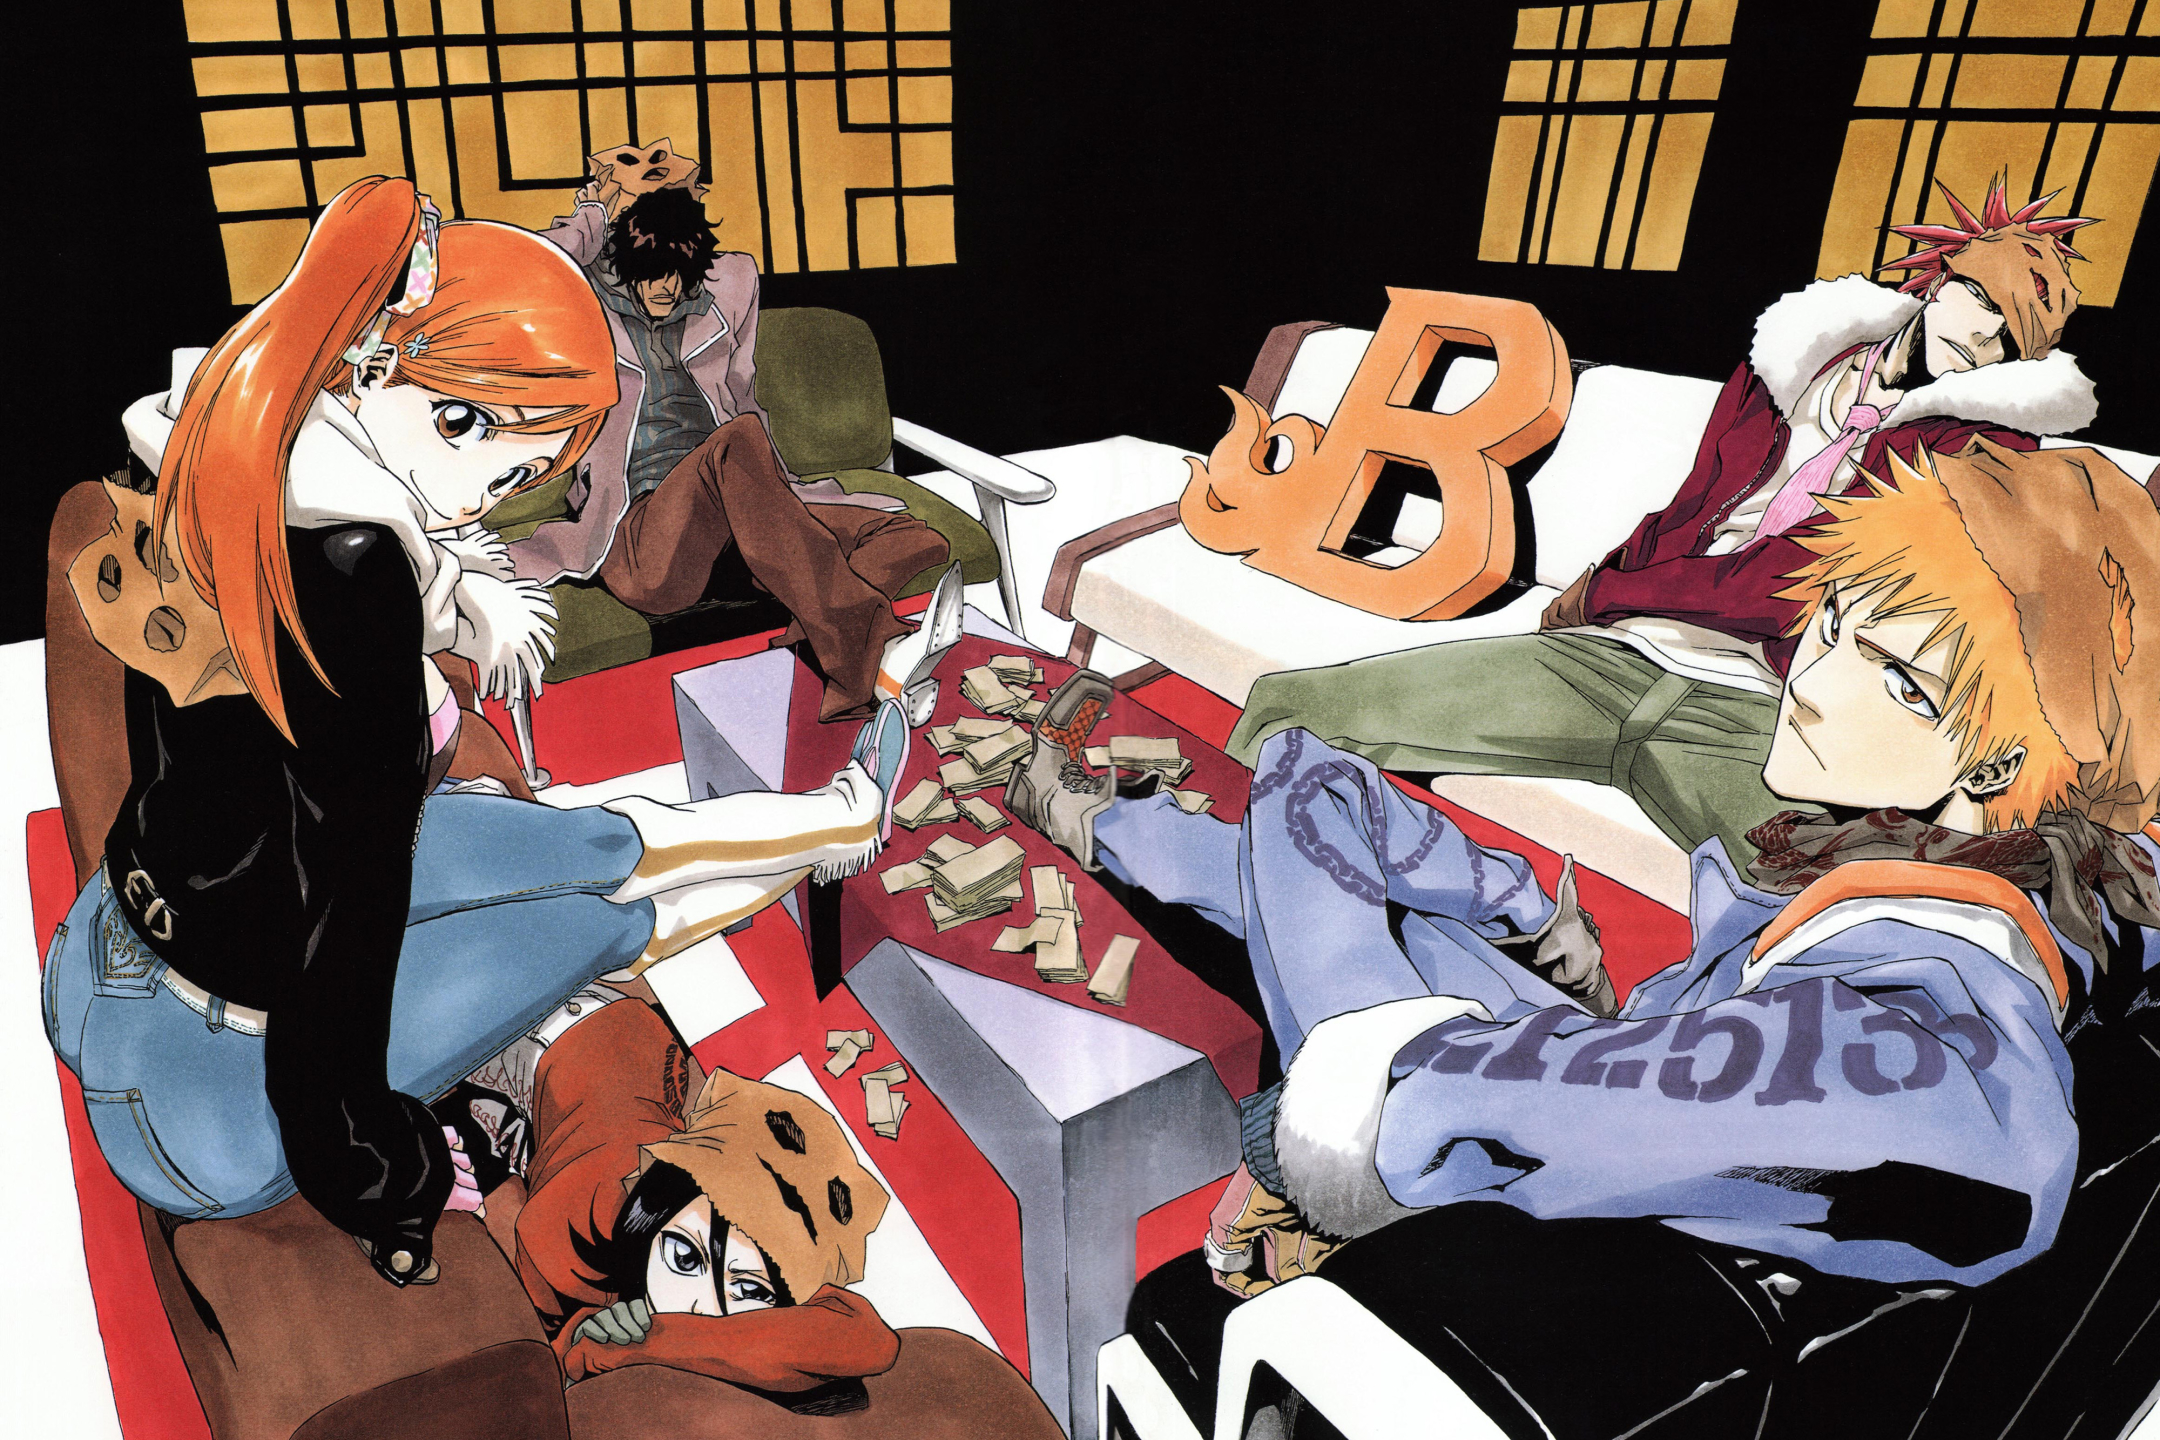 Descarga gratuita de fondo de pantalla para móvil de Animado, Rukia Kuchiki, Bleach: Burîchi, Renji Abarai, Ichigo Kurosaki, Orihime Inoue, Yasutora Sado.